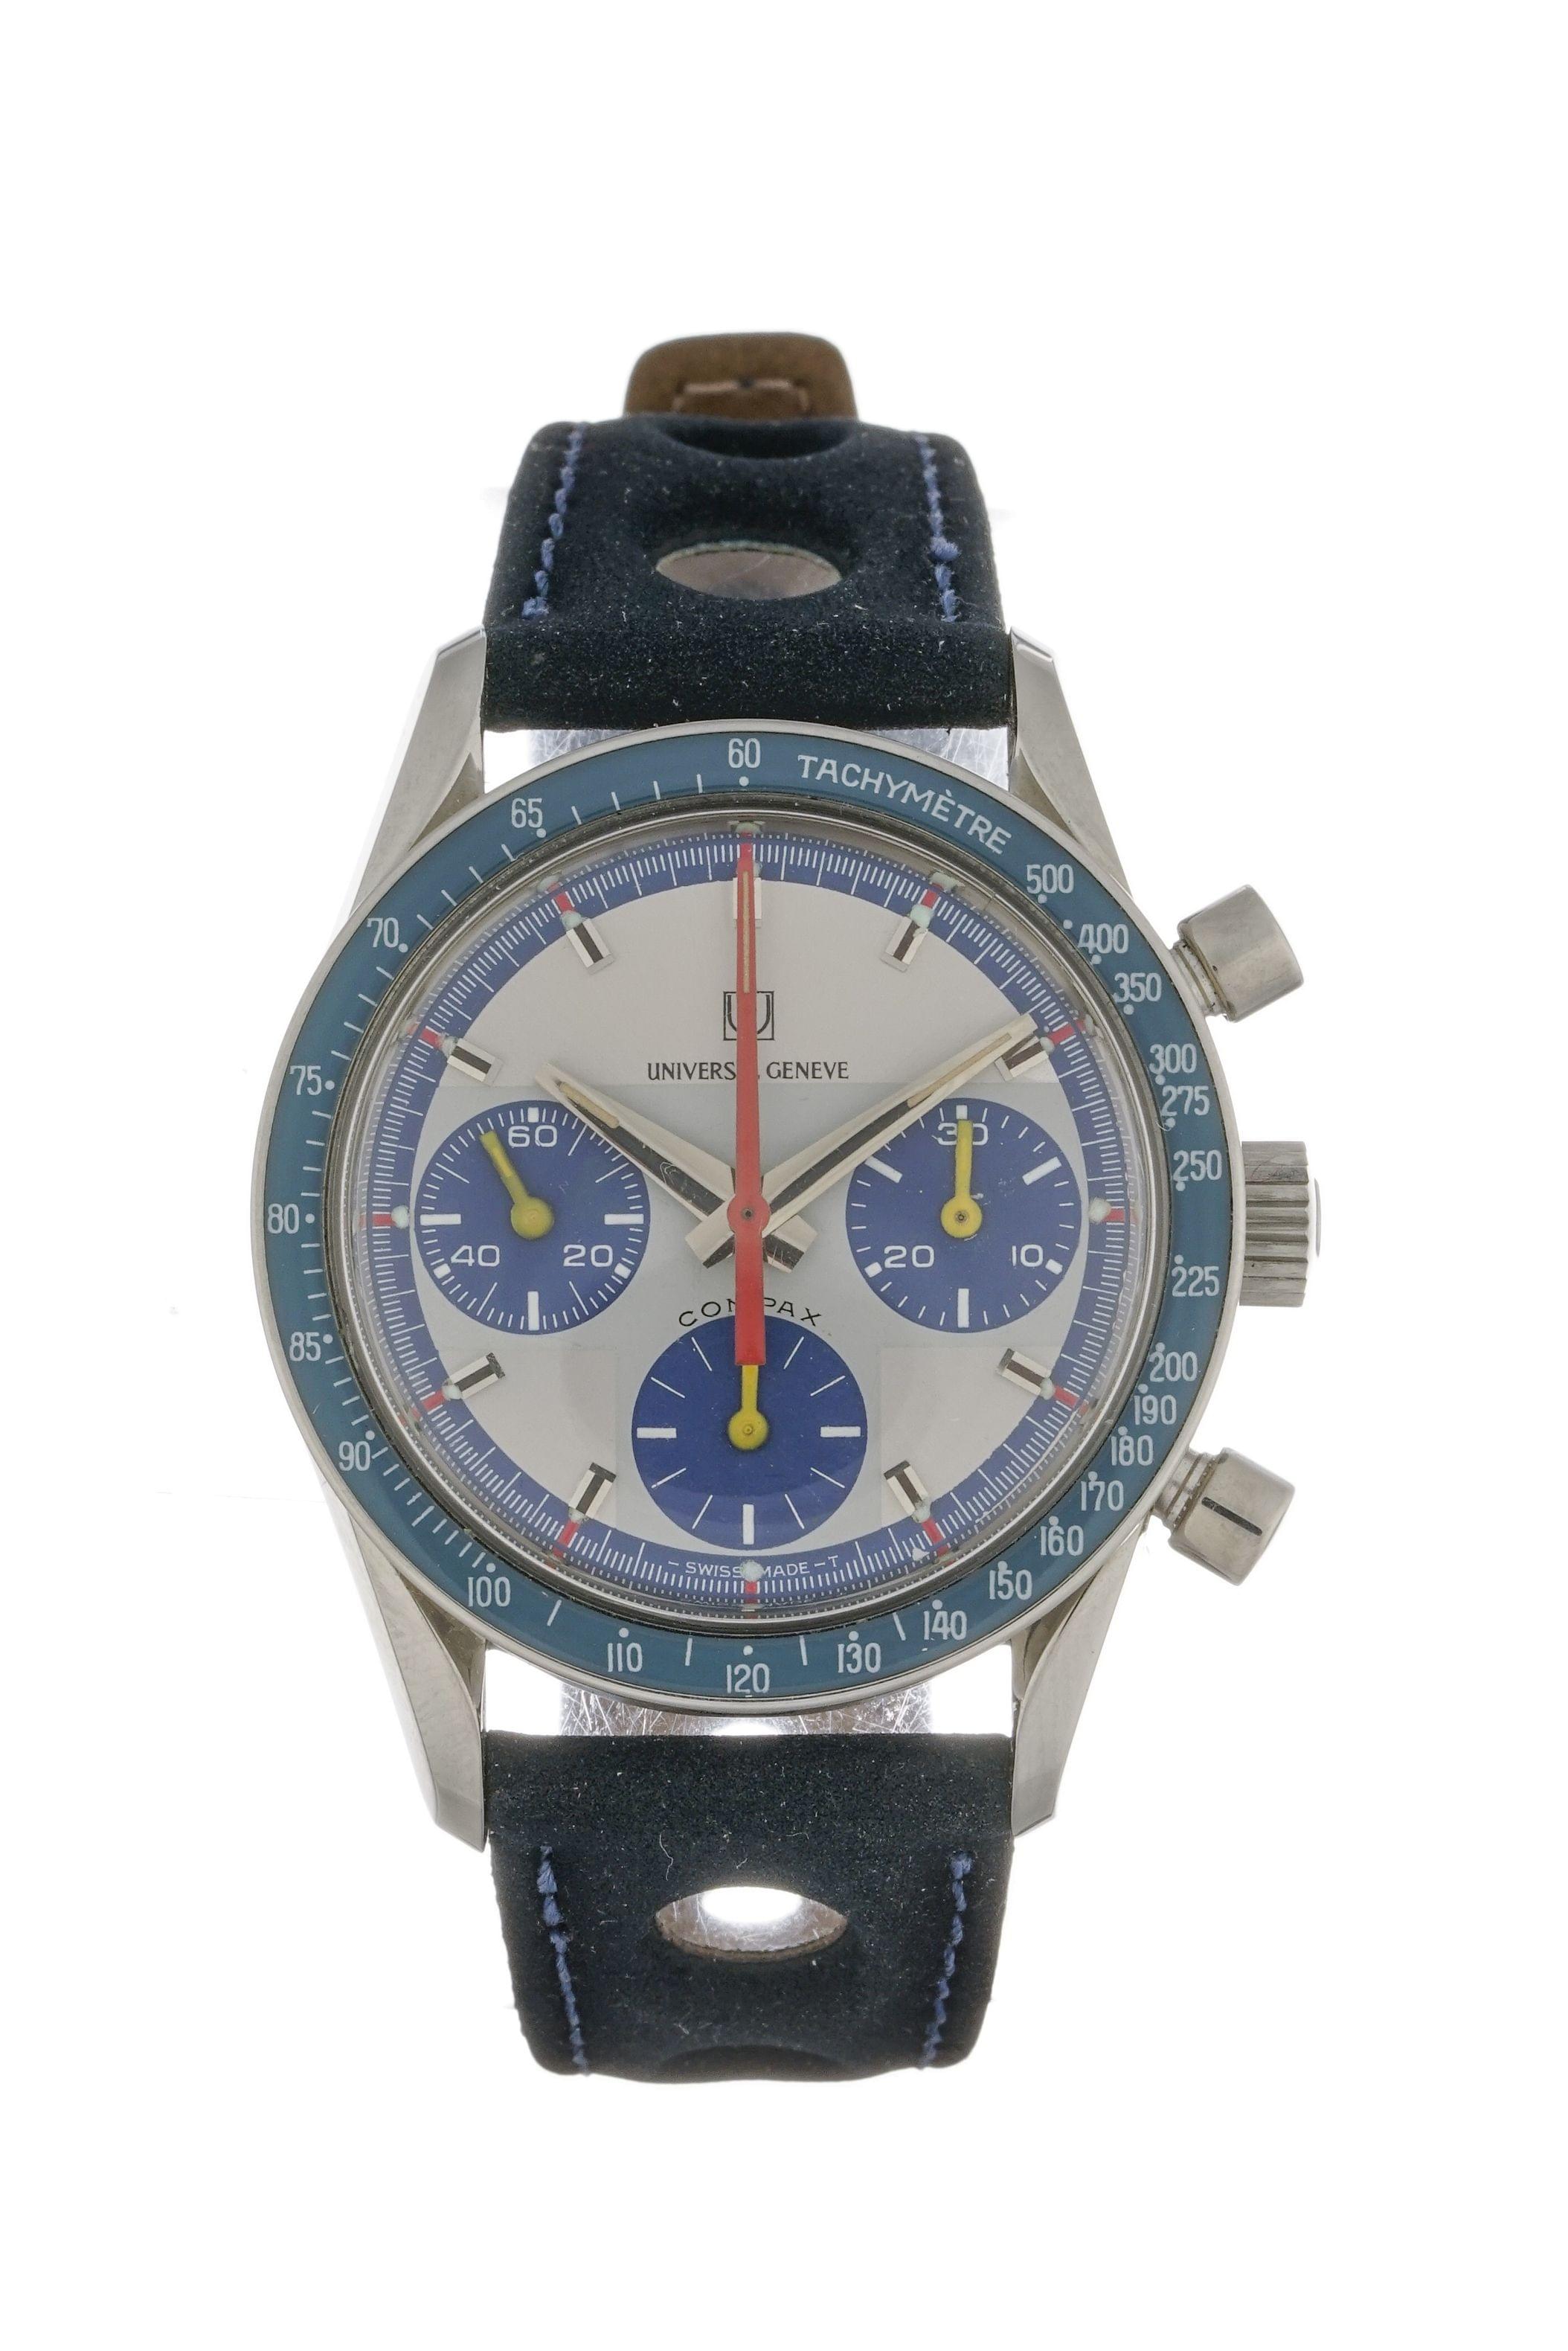 Universal Genève, Compax, montre chronographe ronde mécanique